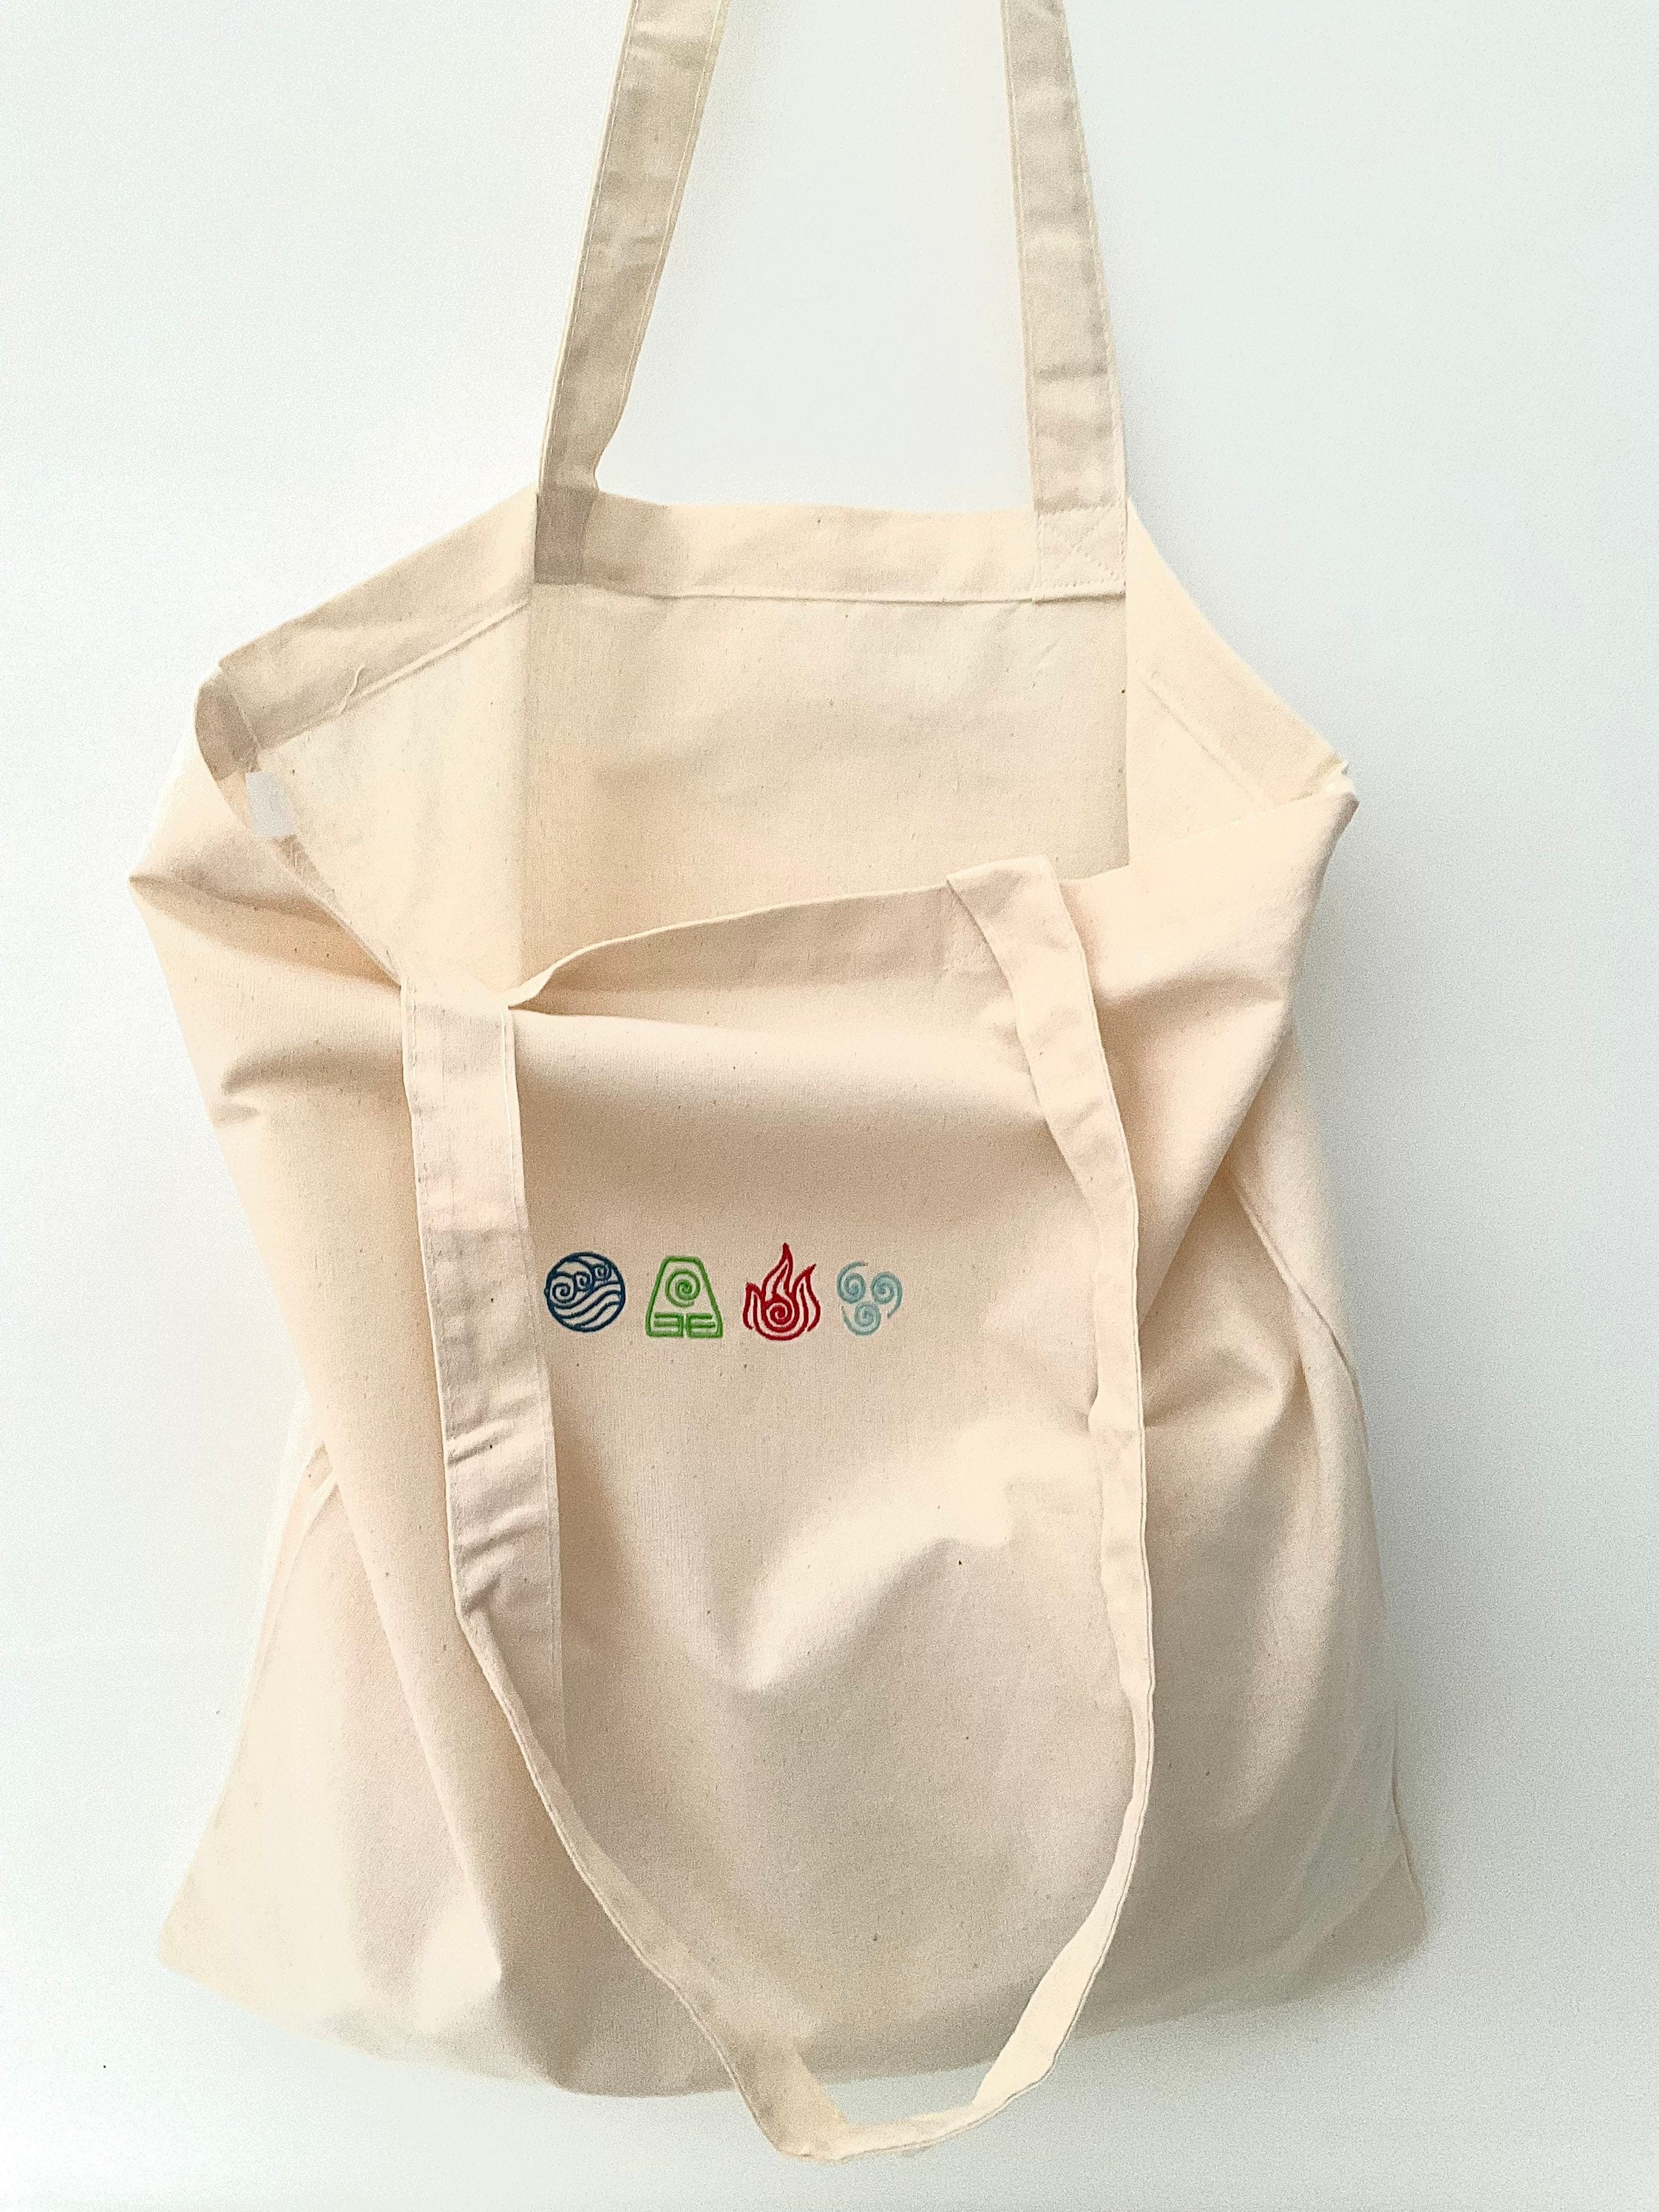 Avatar Elements Embroidered Shoulder Bag Tote | Etsy